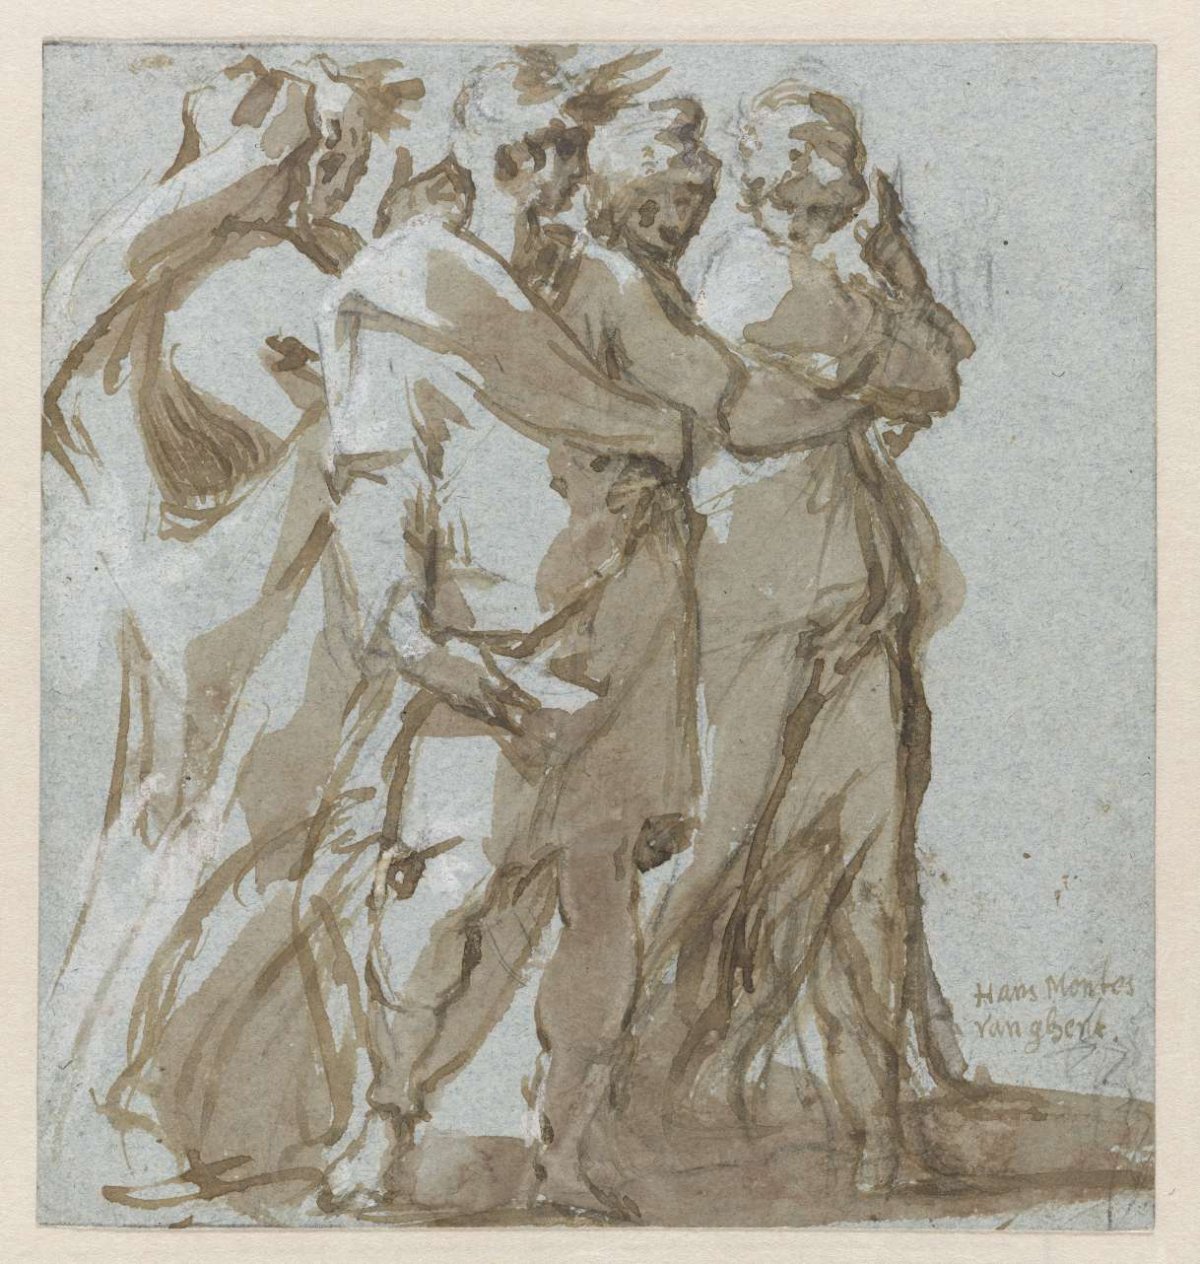 Five Standing Figures, Hans Mont, c. 1550 - c. 1600